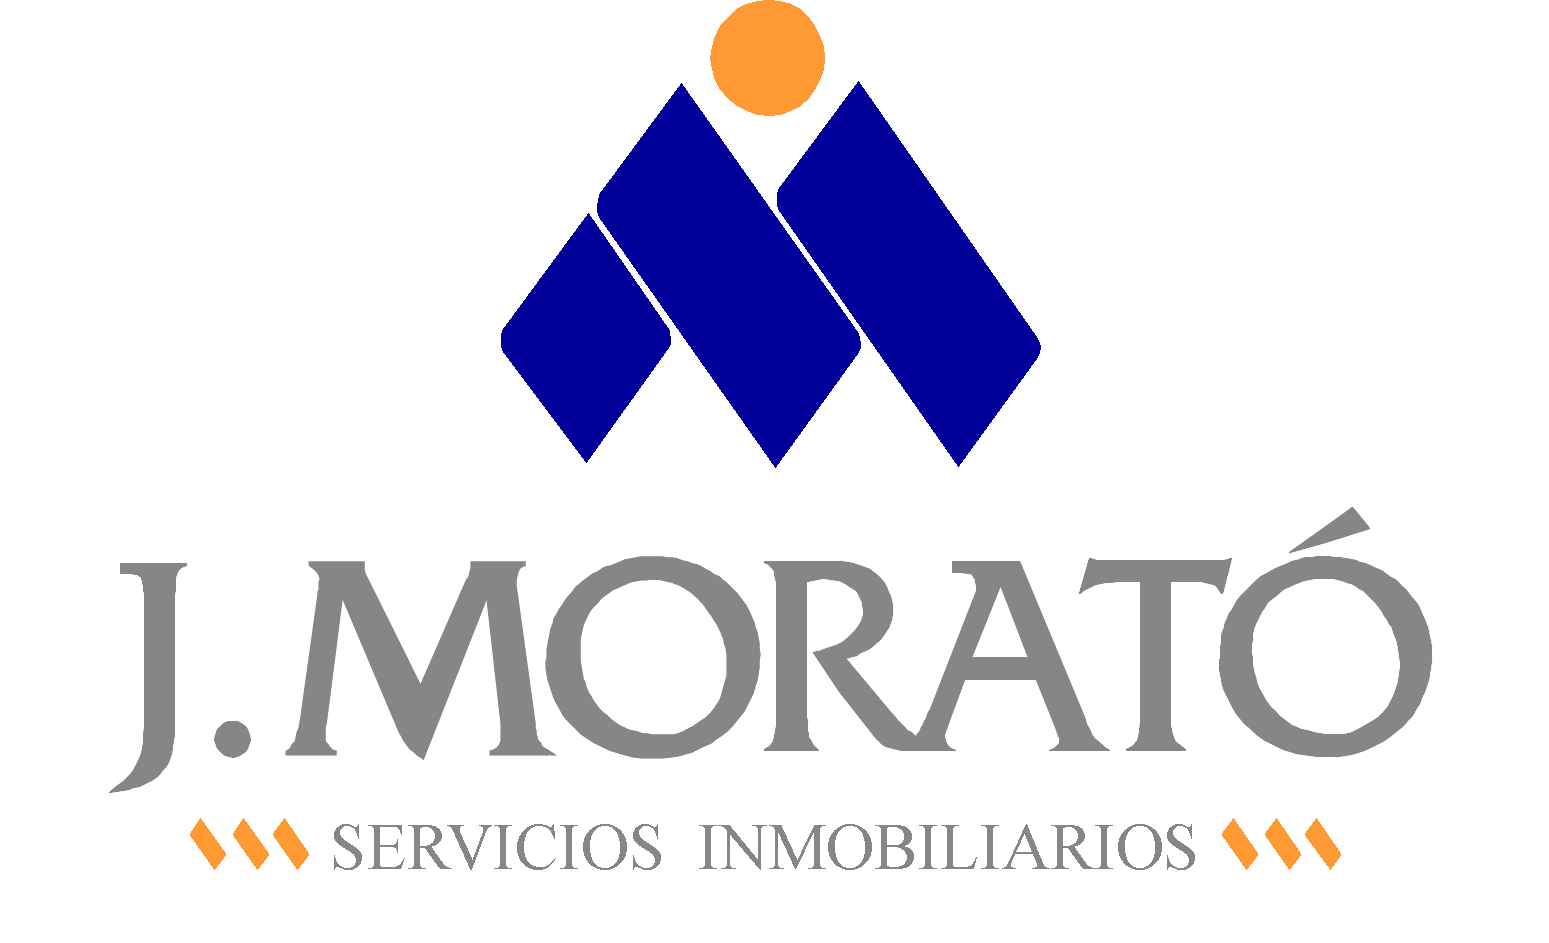 Agencia J. Morató